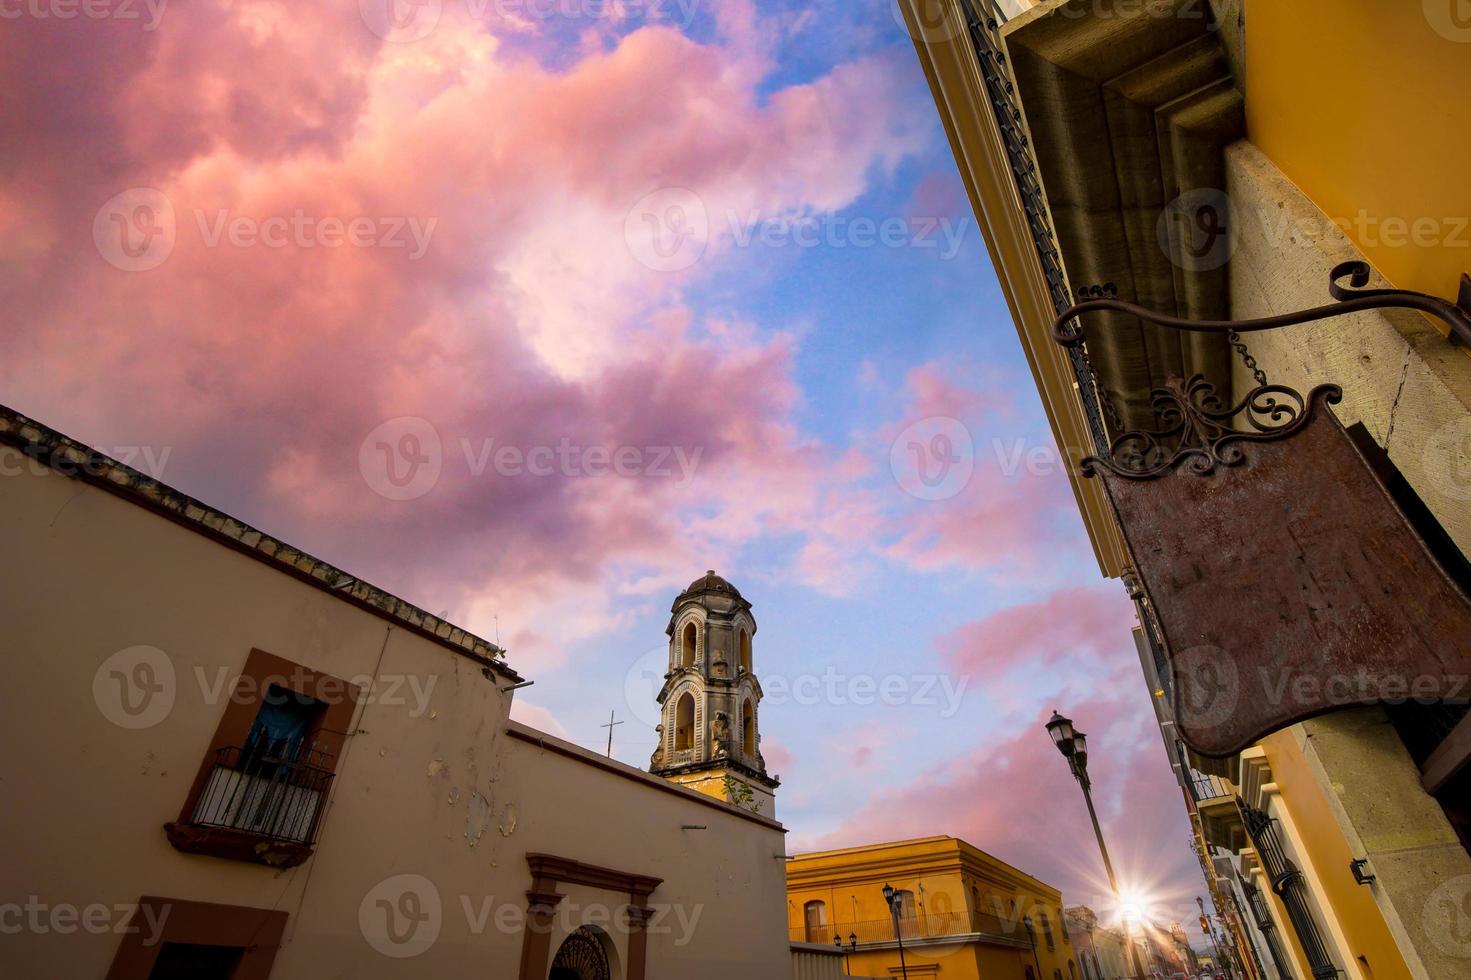 oaxaca, méxico, ruas pitorescas da cidade velha e edifícios coloniais coloridos no centro histórico da cidade foto